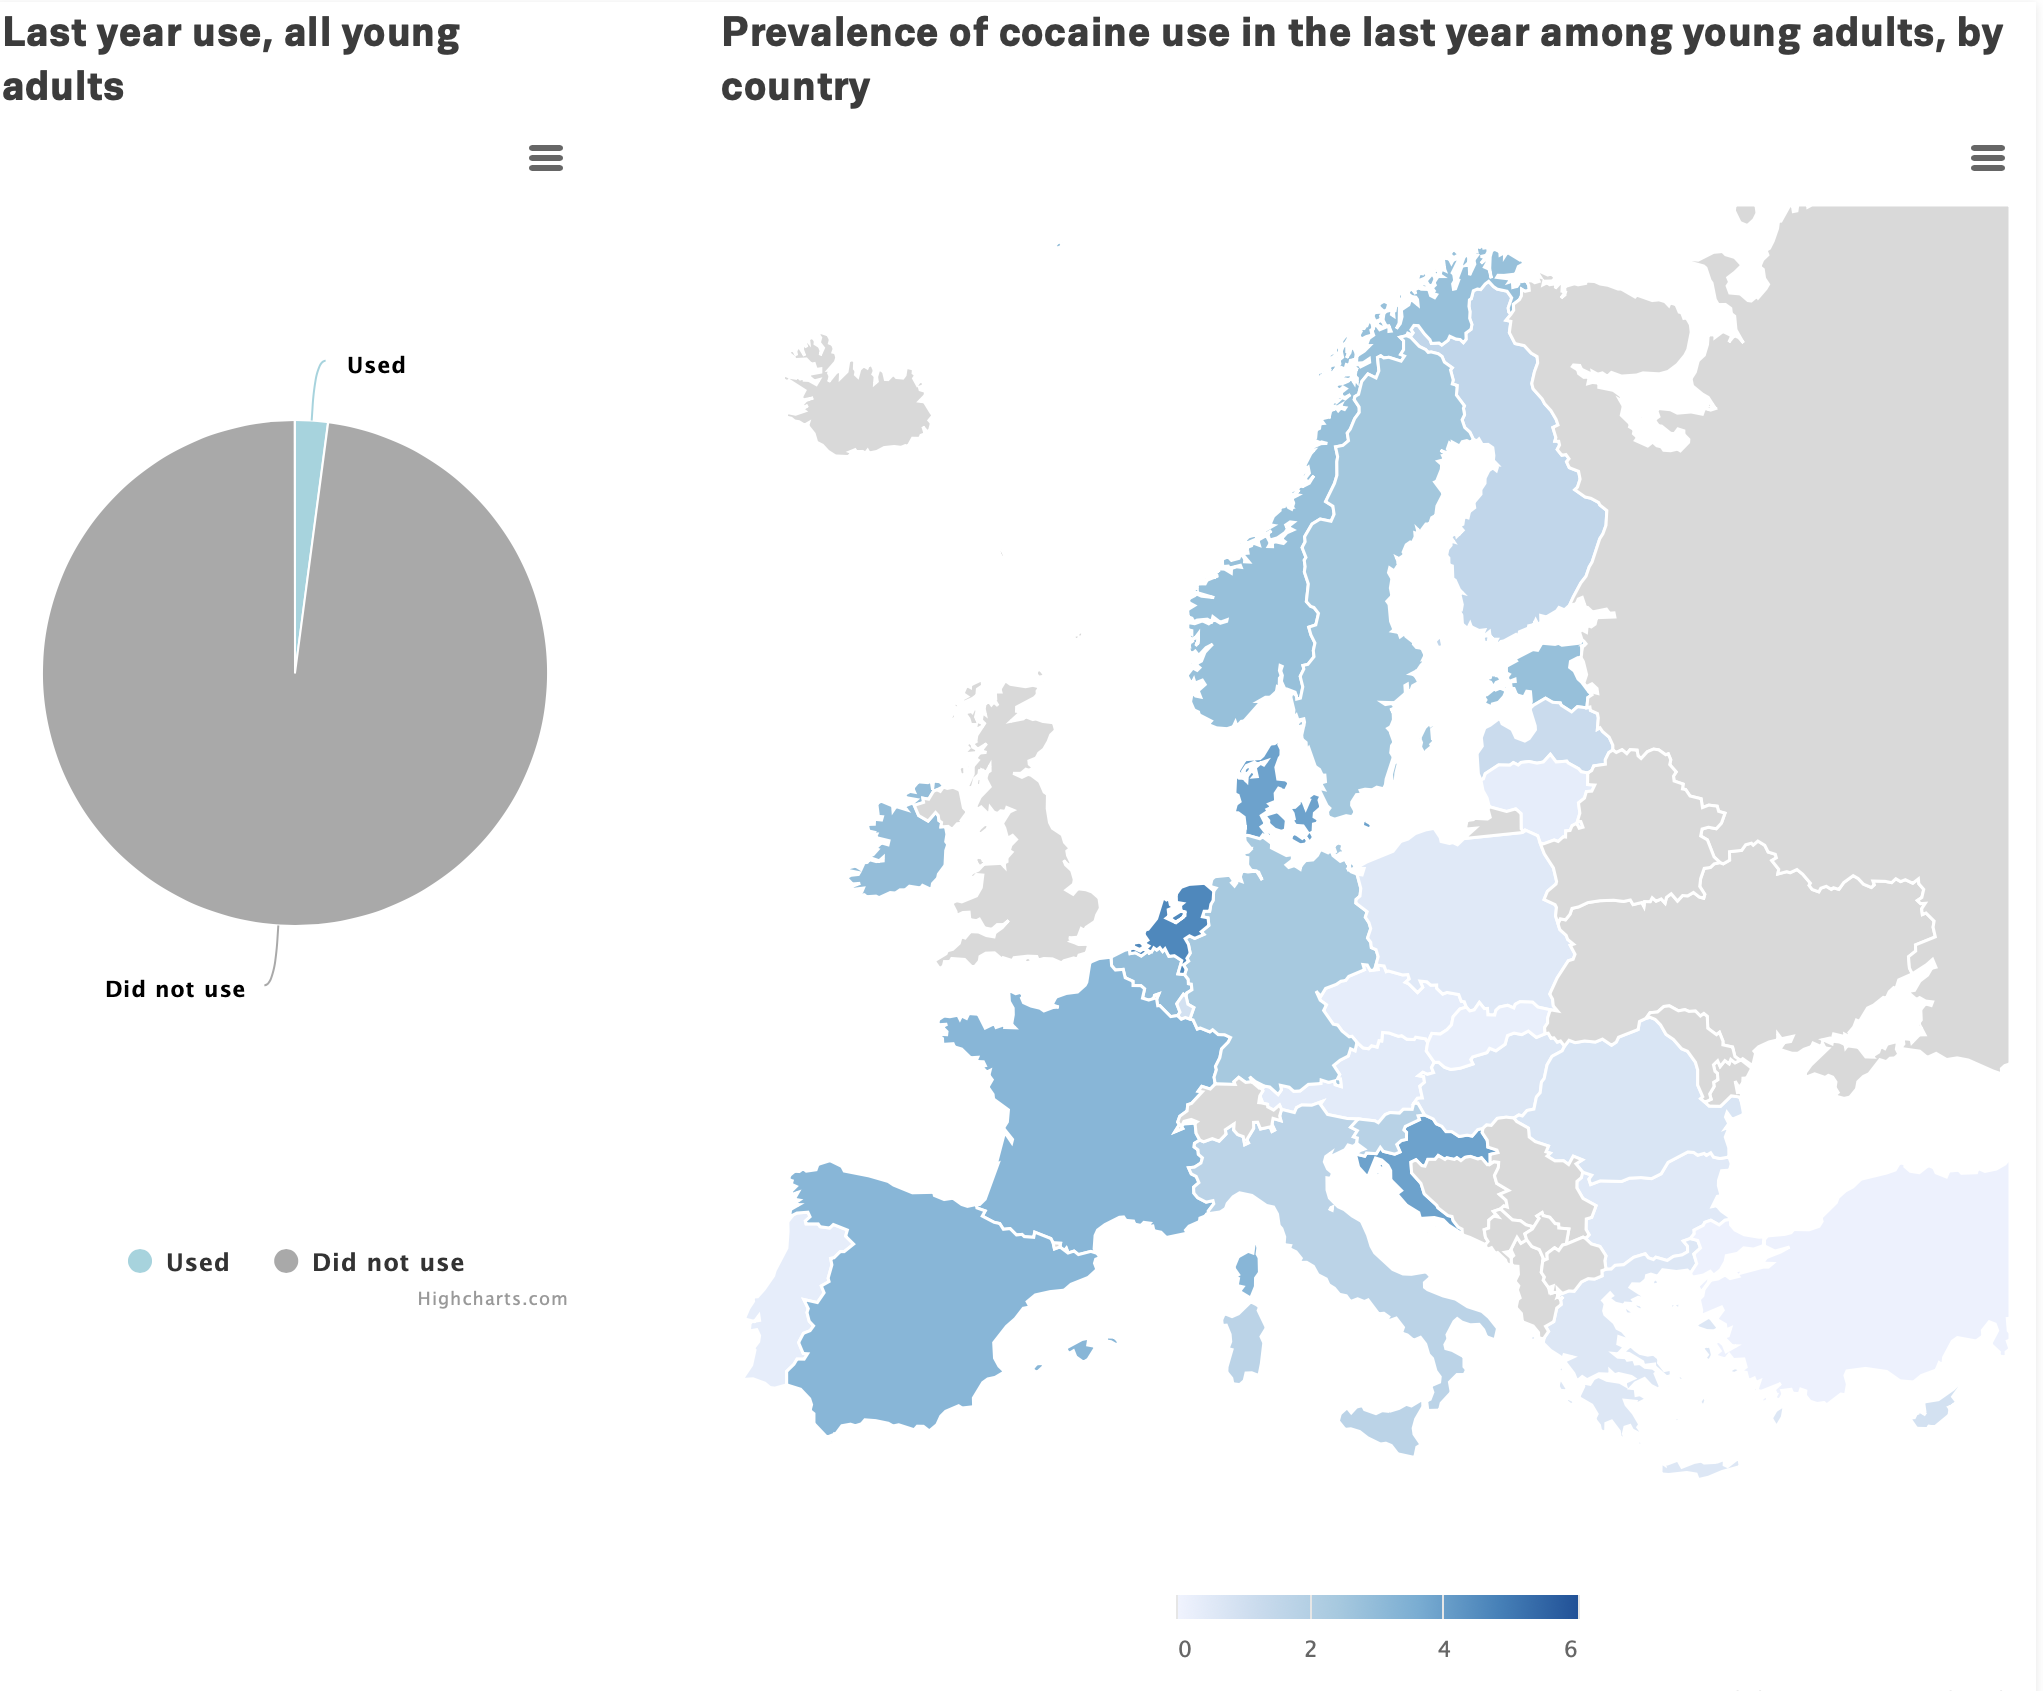 Si la consommation de cocaïne au cours de l’année écoulée chez les jeunes est faible, elle avoisine les 3 % dans de nombreux pays d’Europe. <donottranslate>